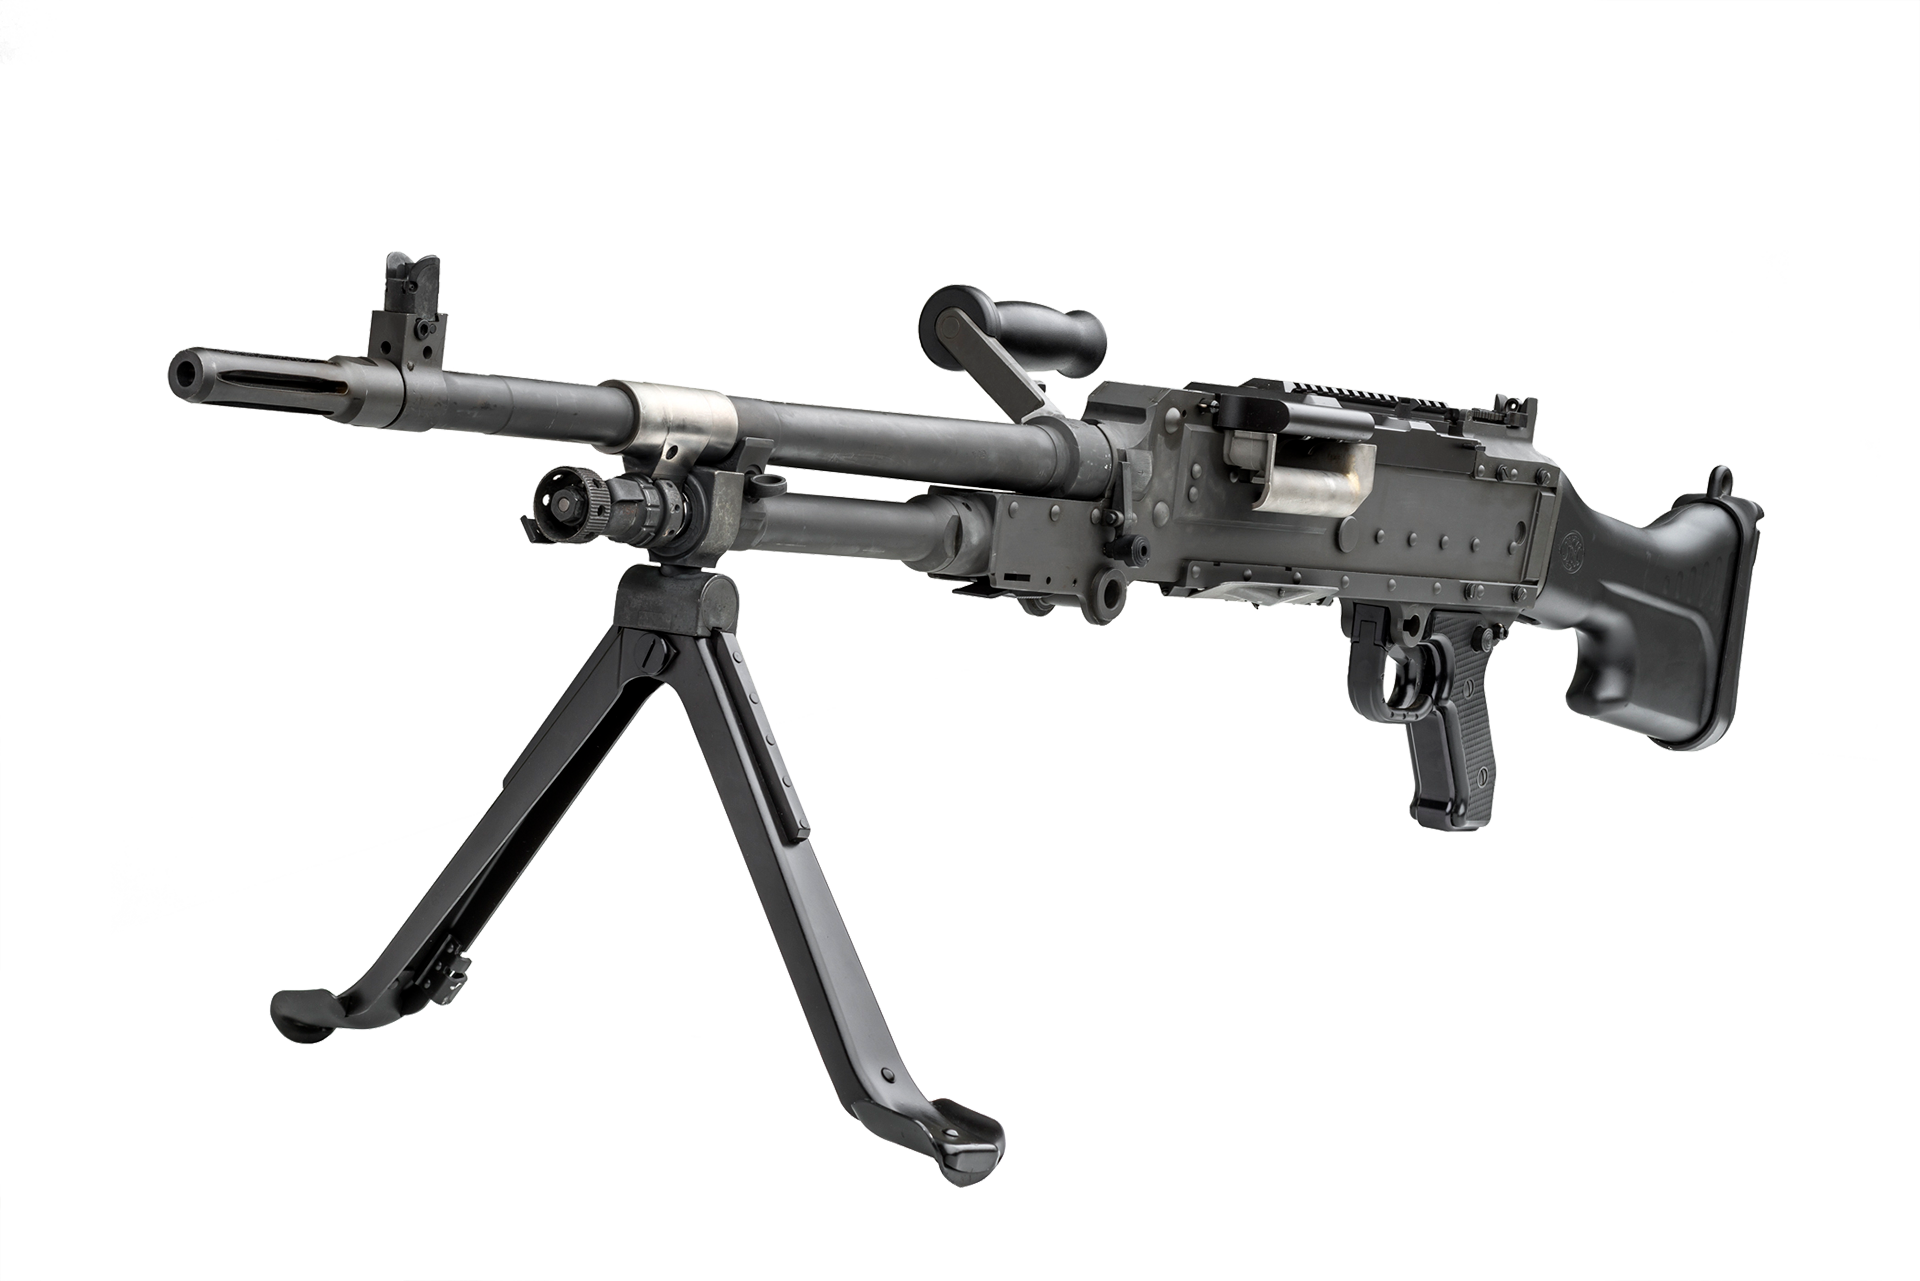 FN MAG Machine Gun 7.62x51mm